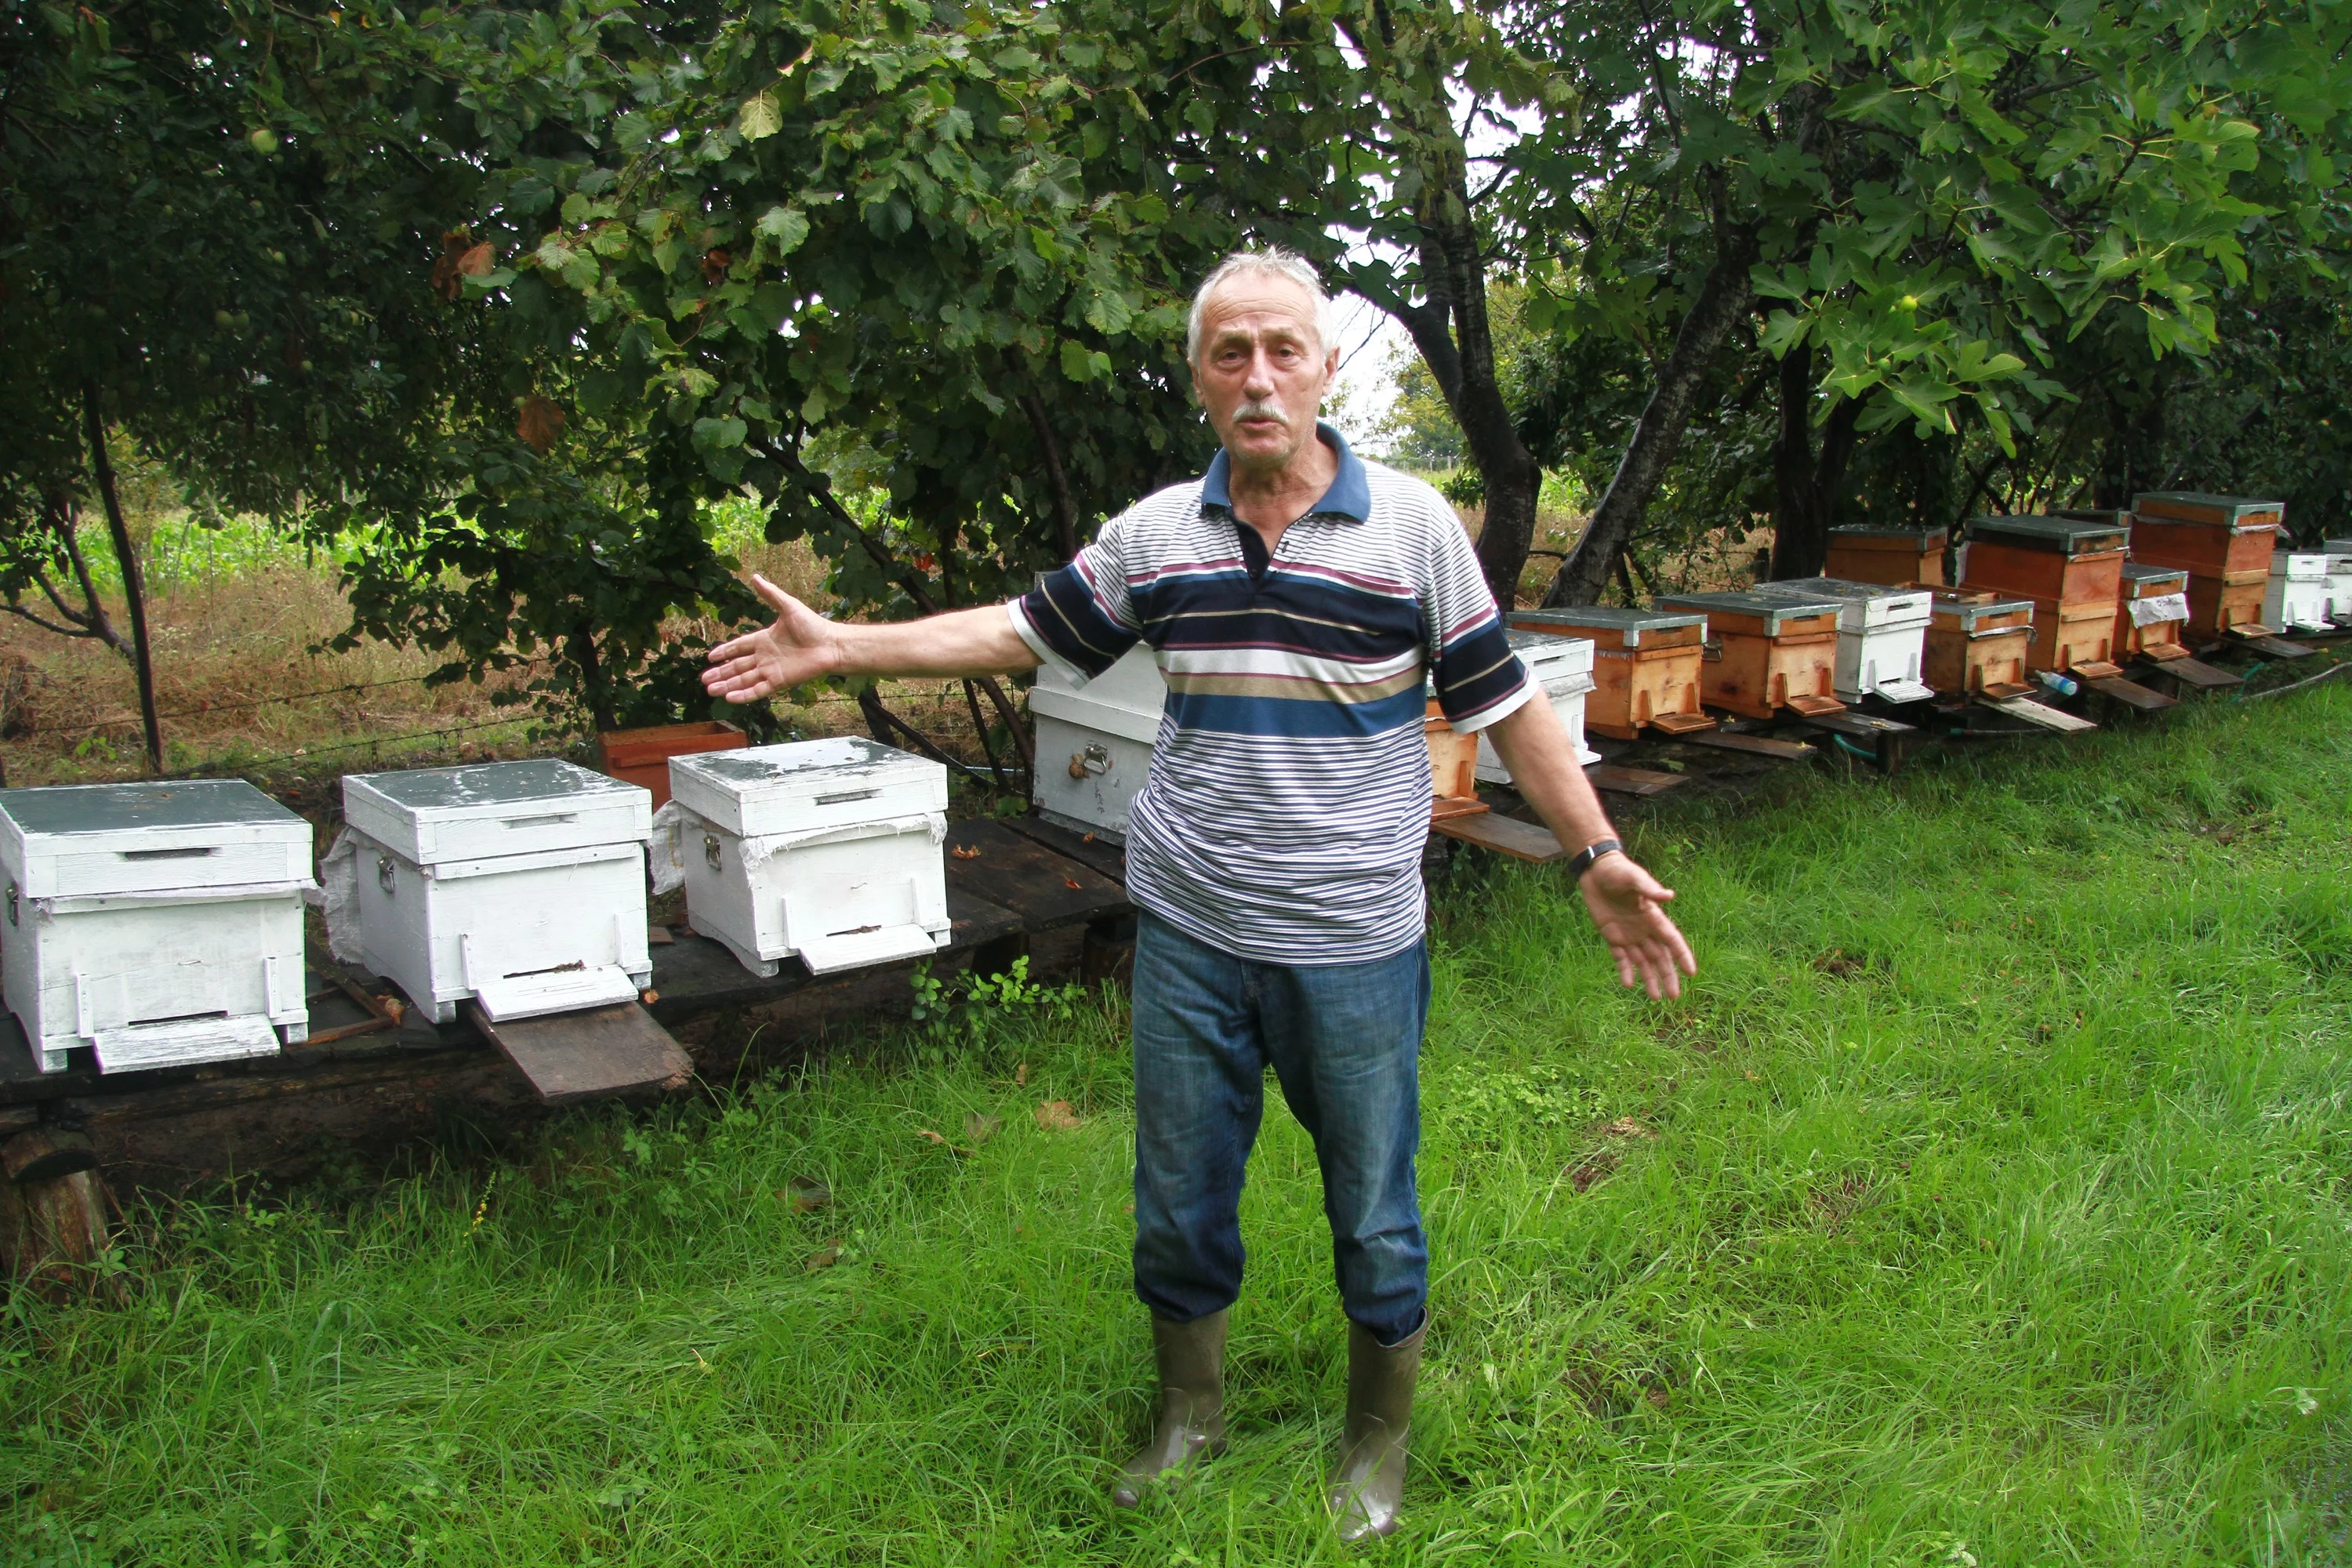 Metrekareye 70 kilogram yağış düştü, binlerce arı telef oldu